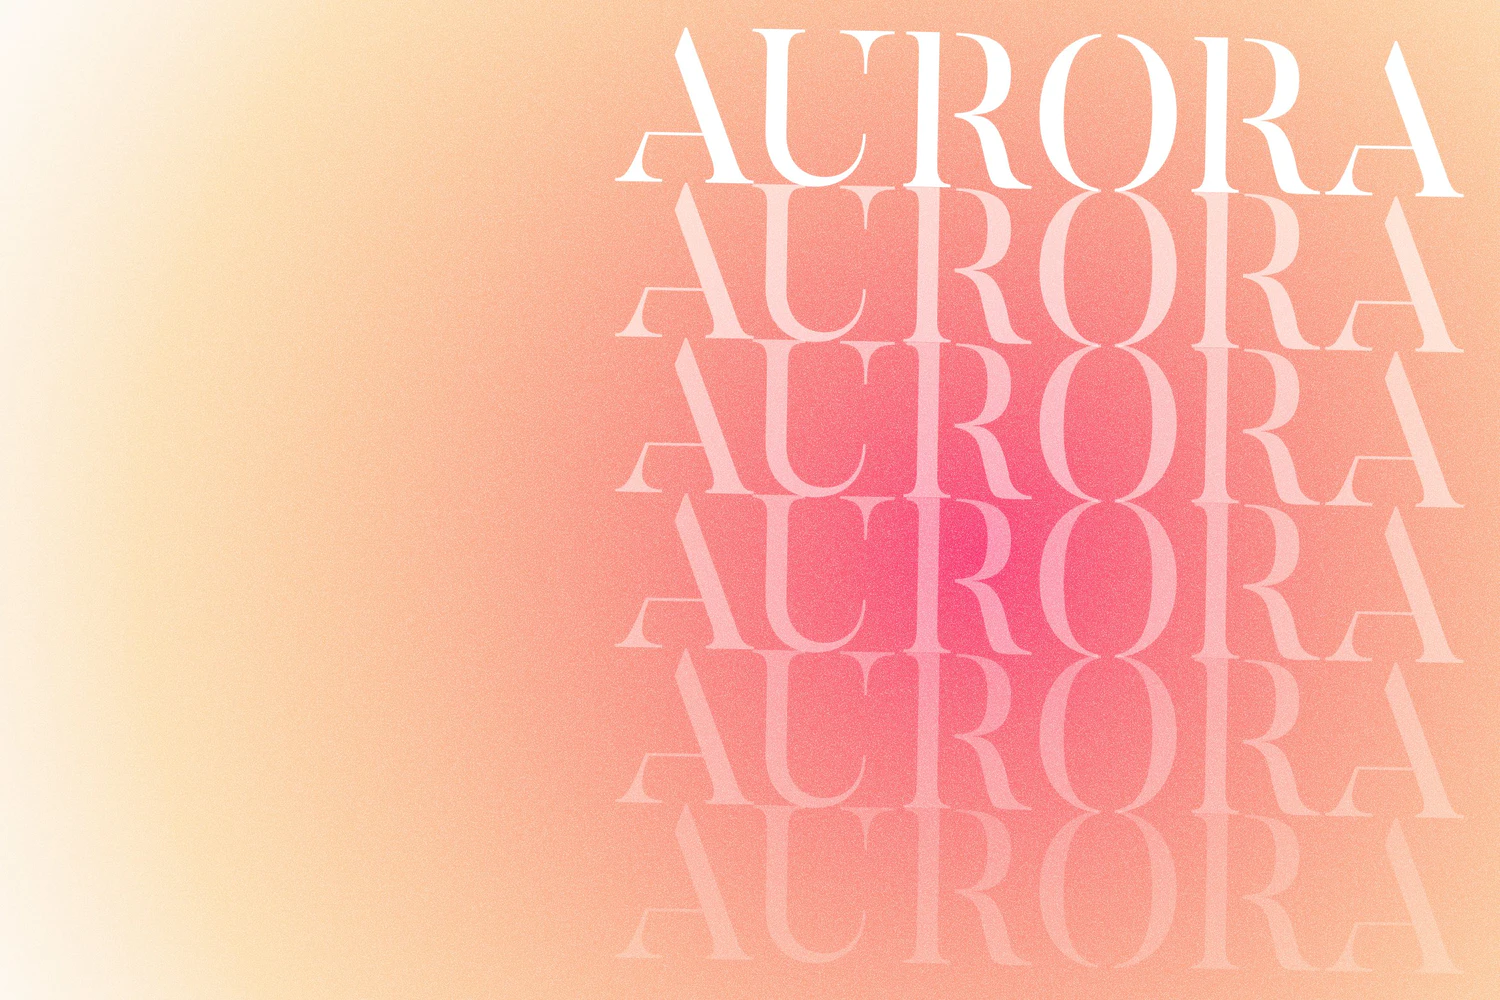 1567 粉色极光光晕渐变背景素材 Aurora Zen Gradient Backgrounds